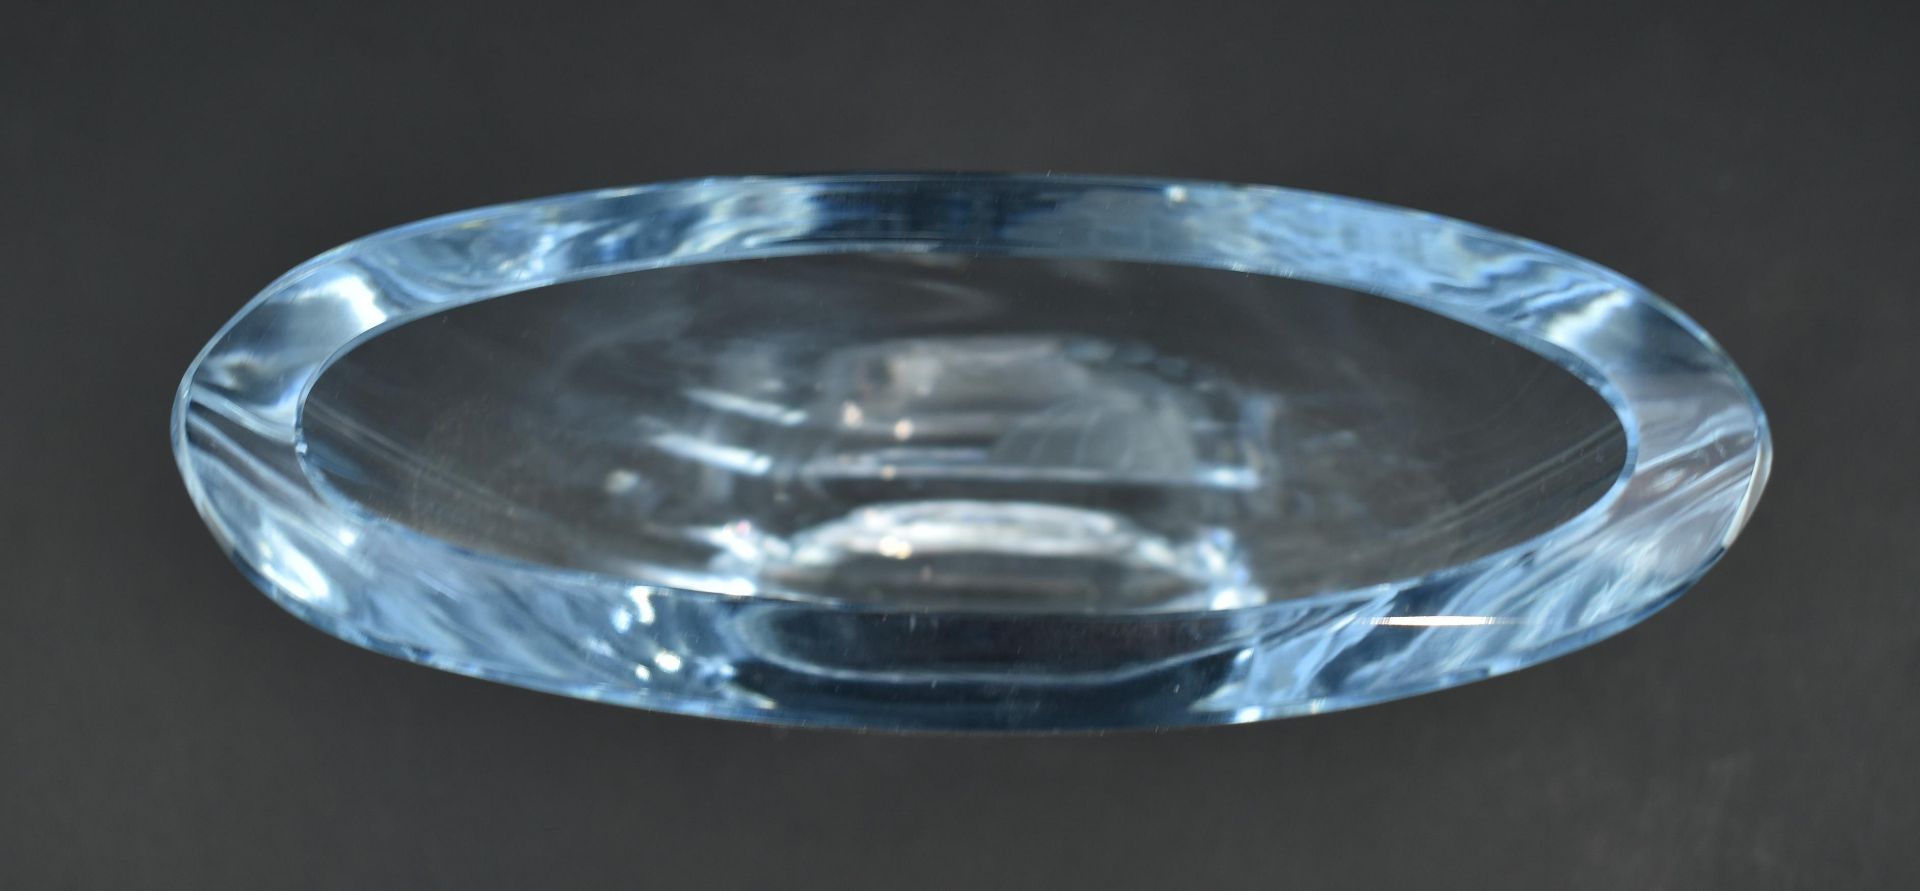 REIJMYRE GLASS POLAR BEAR & STROMBERGSHYTANN GLASS VASE - Image 4 of 8